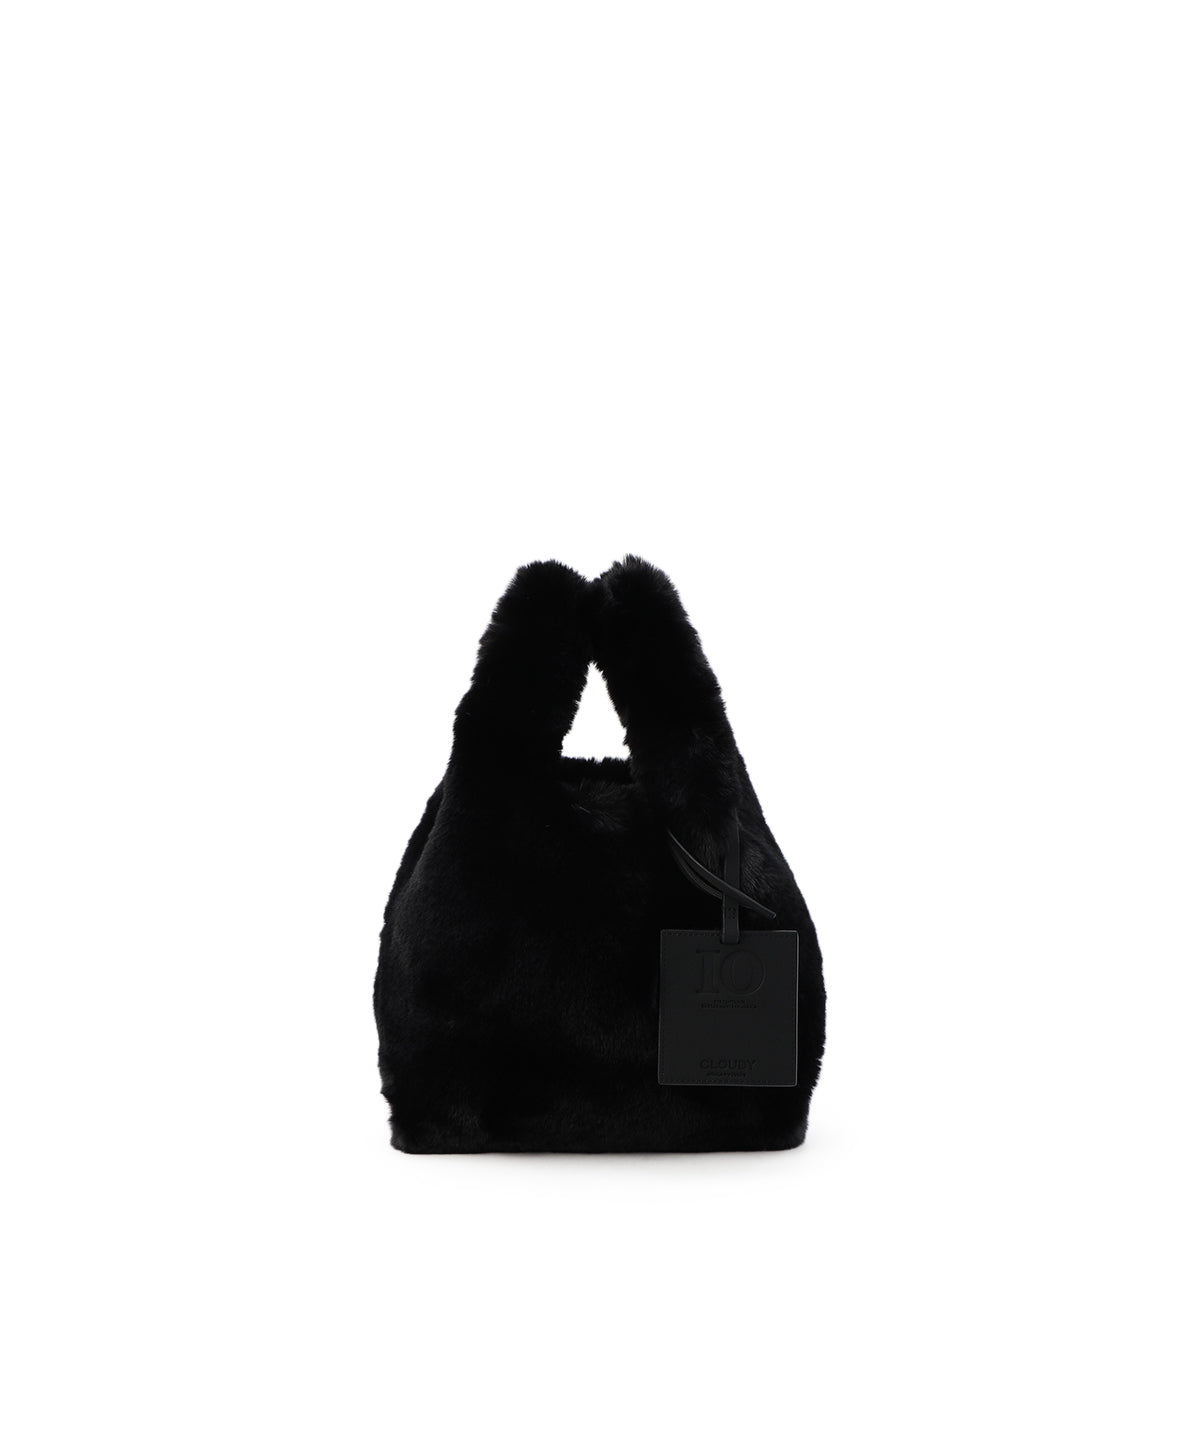 【格安HOT】CLOUDY Eco Fur Tote Bag (Small) L .GRAY バッグ